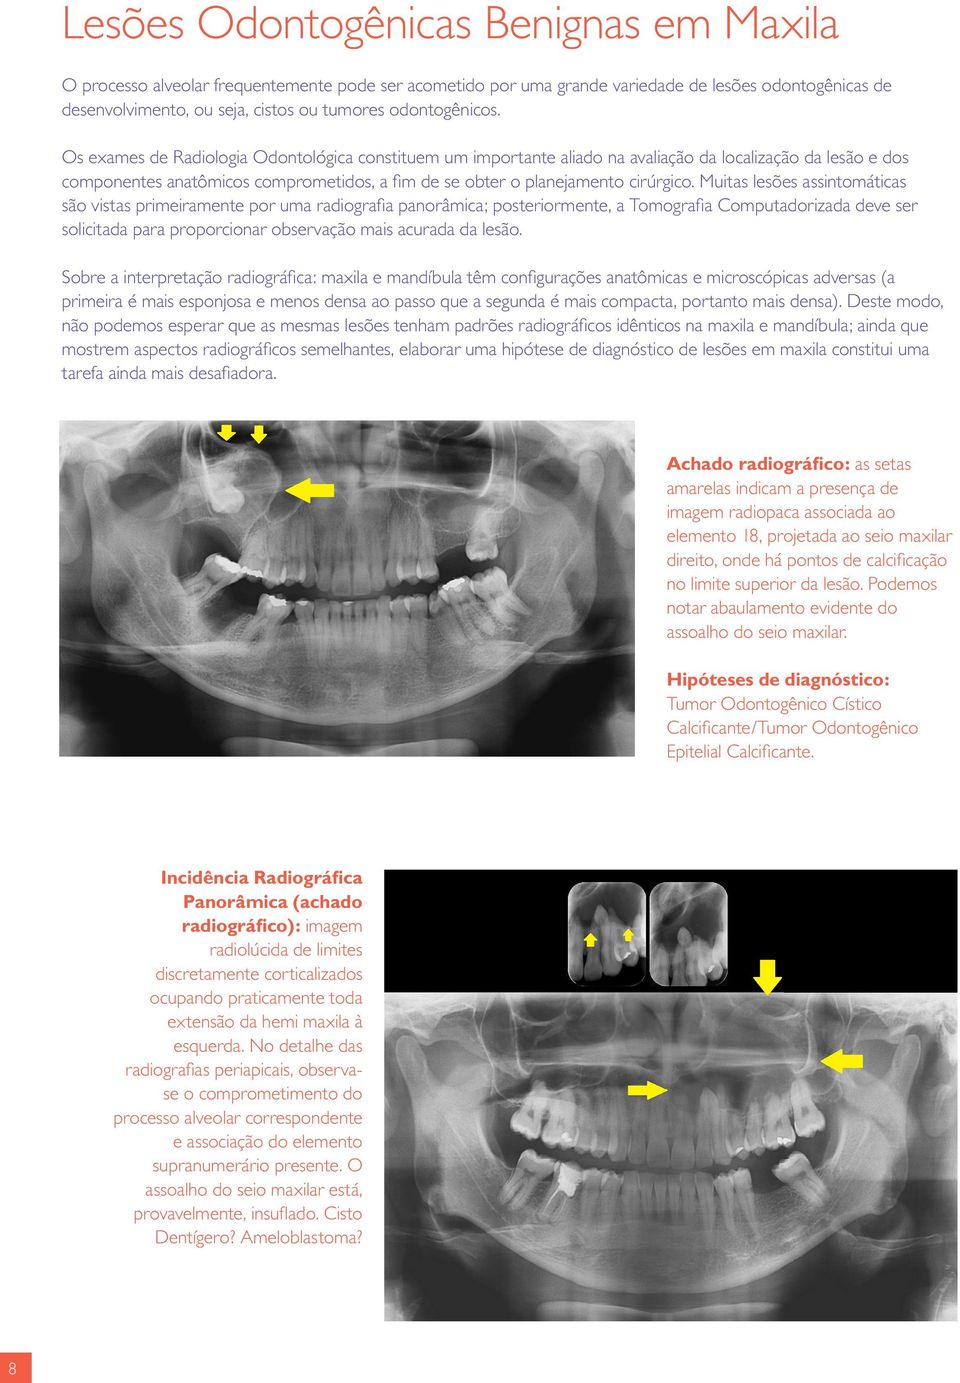 Os exames de Radiologia Odontológica constituem um importante aliado na avaliação da localização da lesão e dos componentes anatômicos comprometidos, a fim de se obter o planejamento cirúrgico.